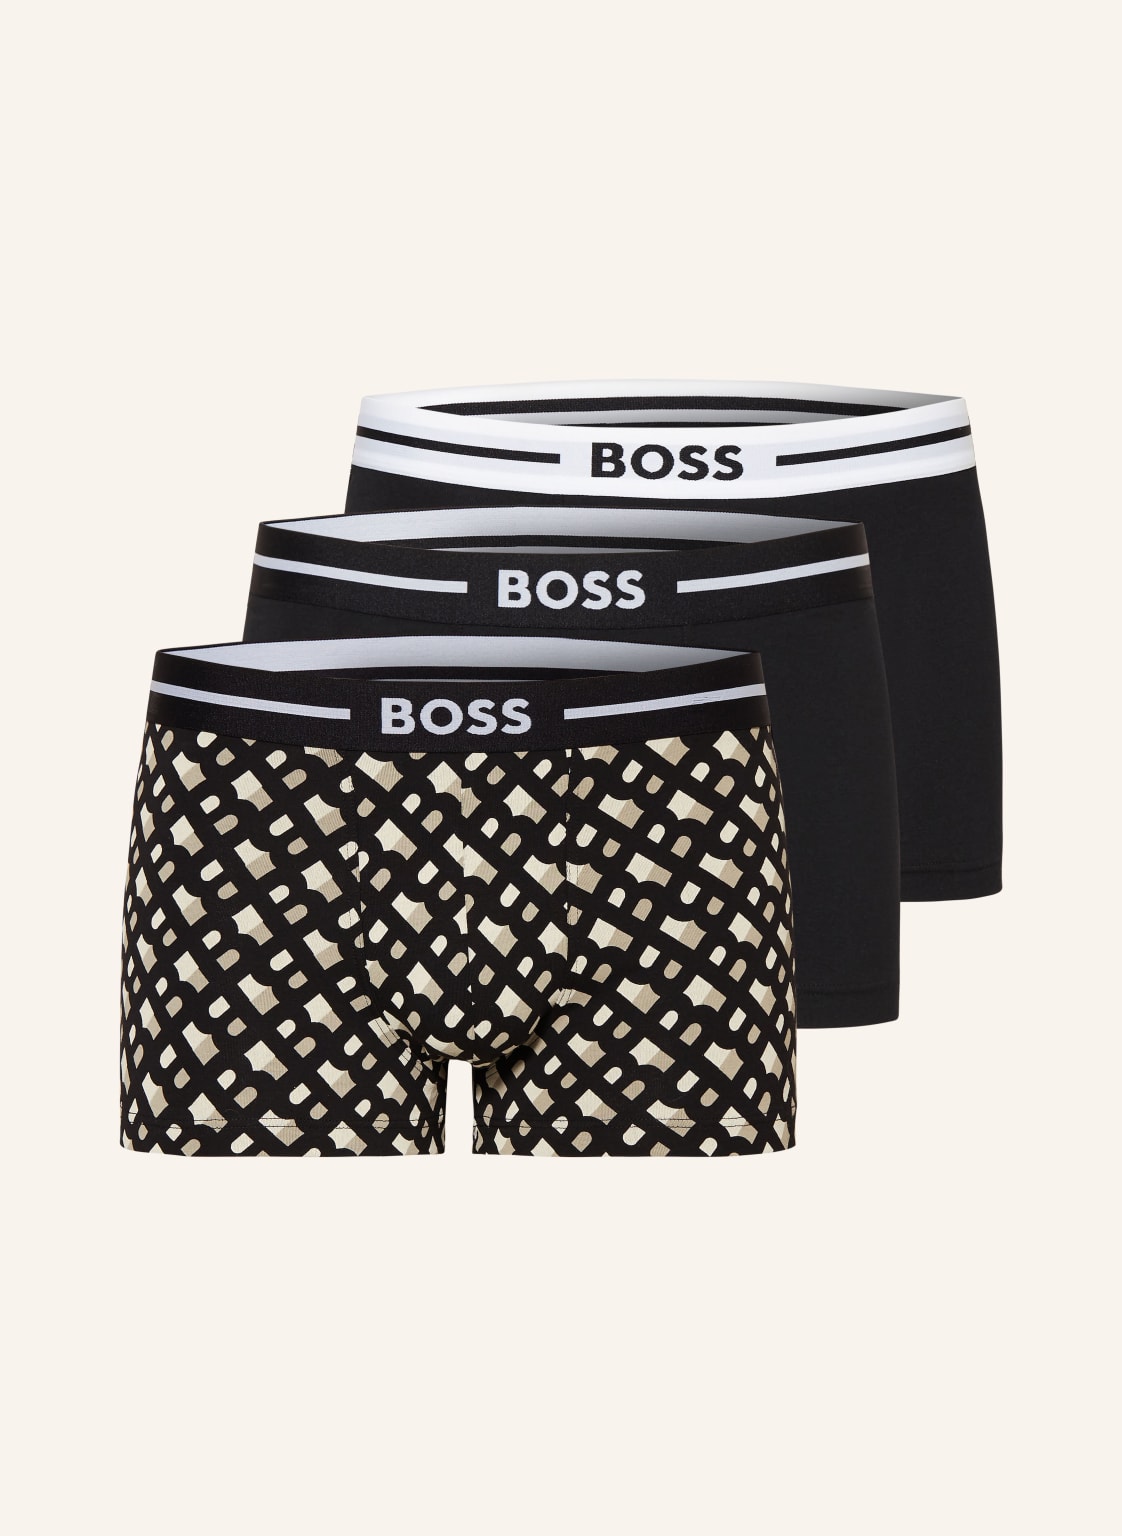 Boss 3er-Pack Boxershorts schwarz von Boss